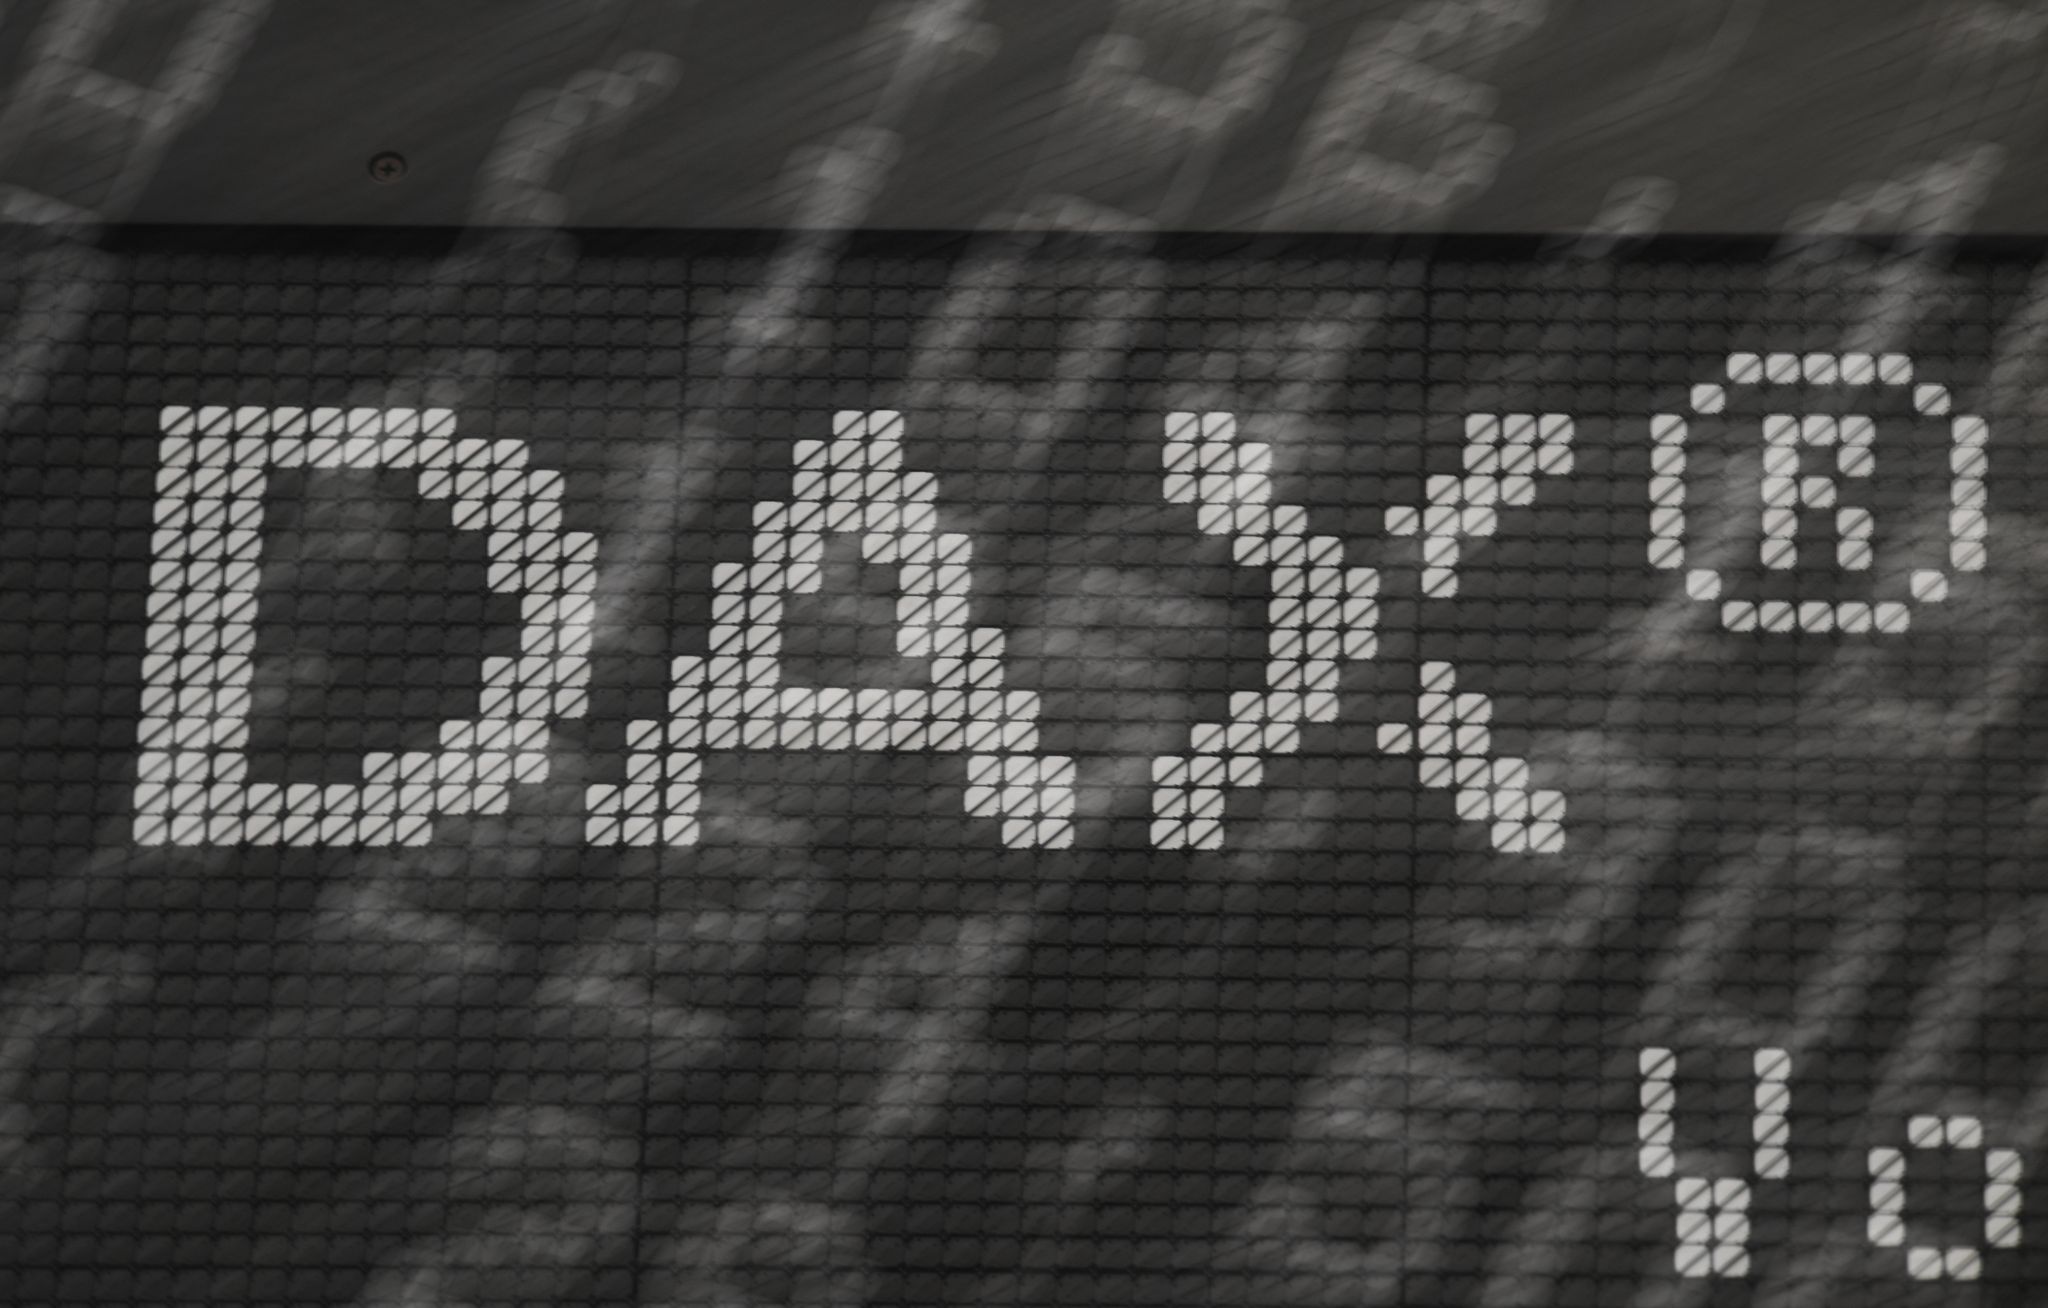 dekabank rechnet mit dividendenrekord für dax-aktionäre